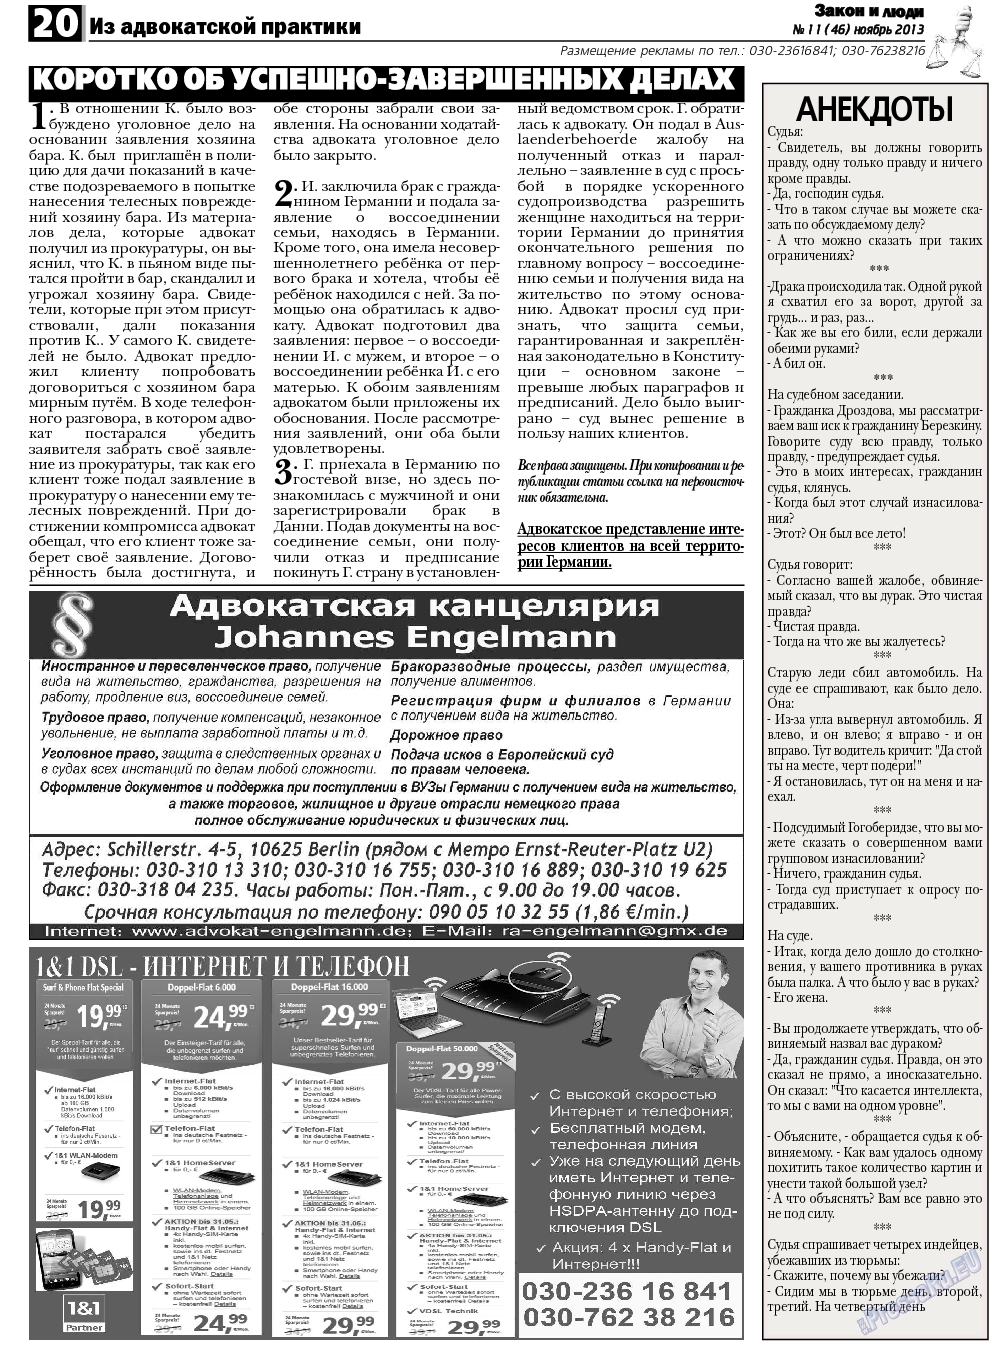 Закон и люди, газета. 2013 №11 стр.20